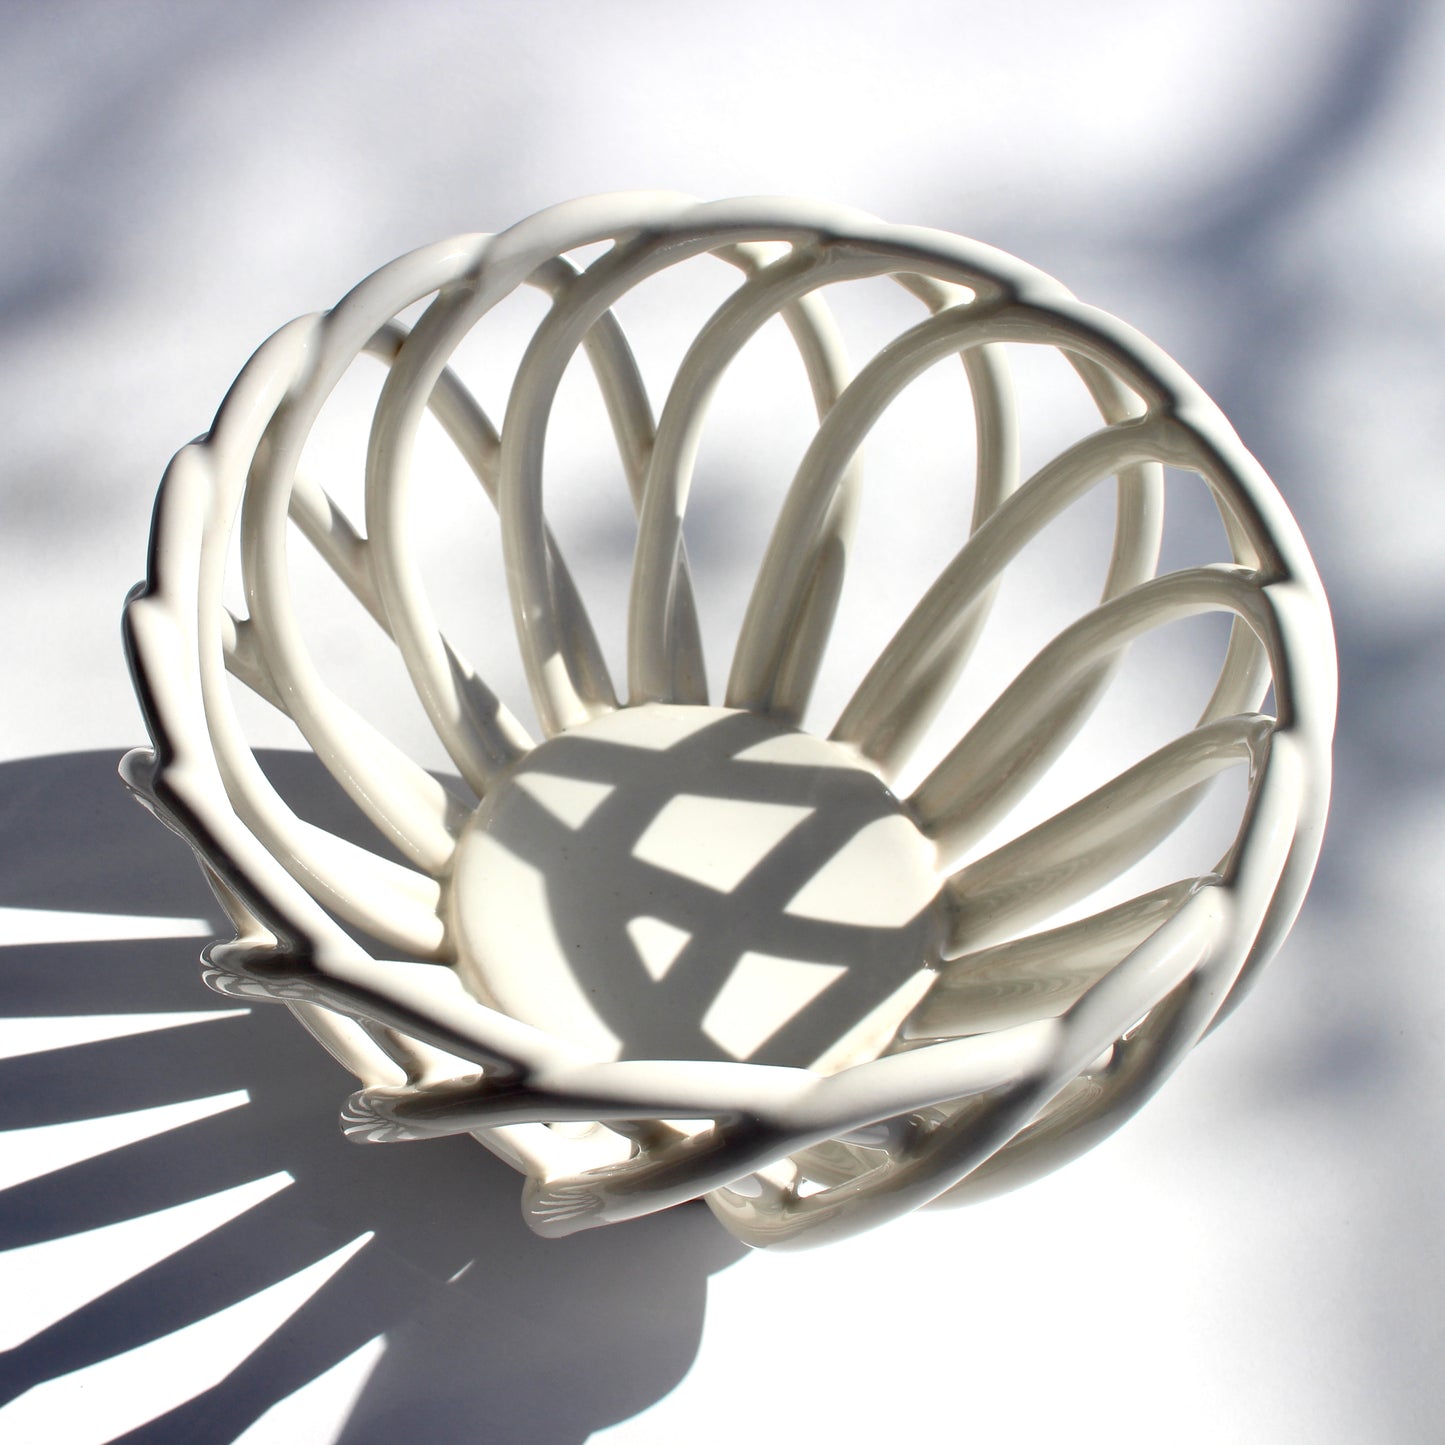 ceramic braided basket